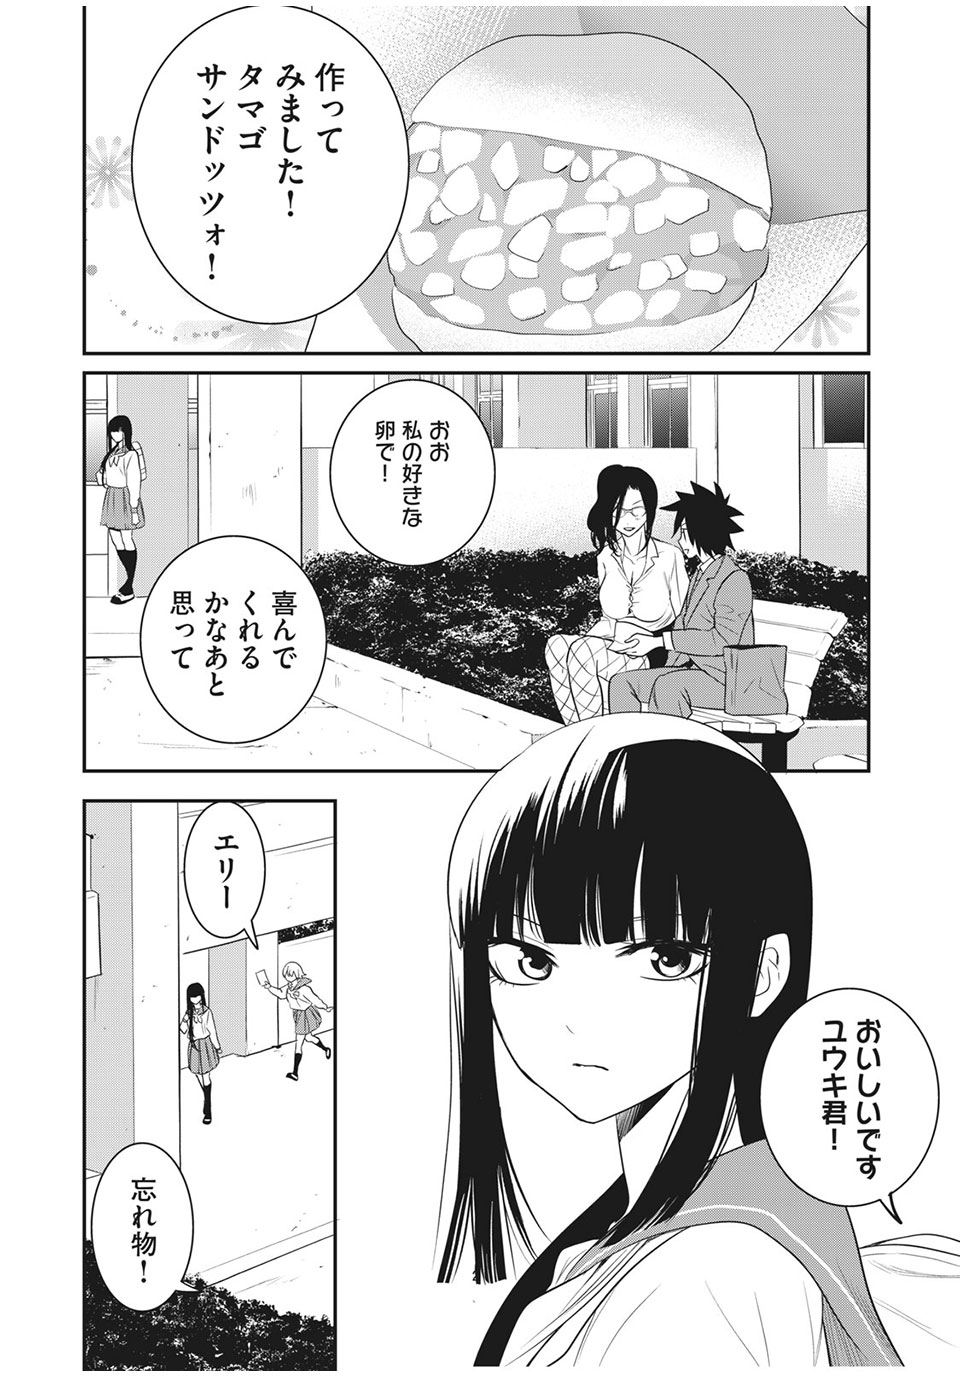 Eigo ×× Sensei - Chapter 24 - Page 2